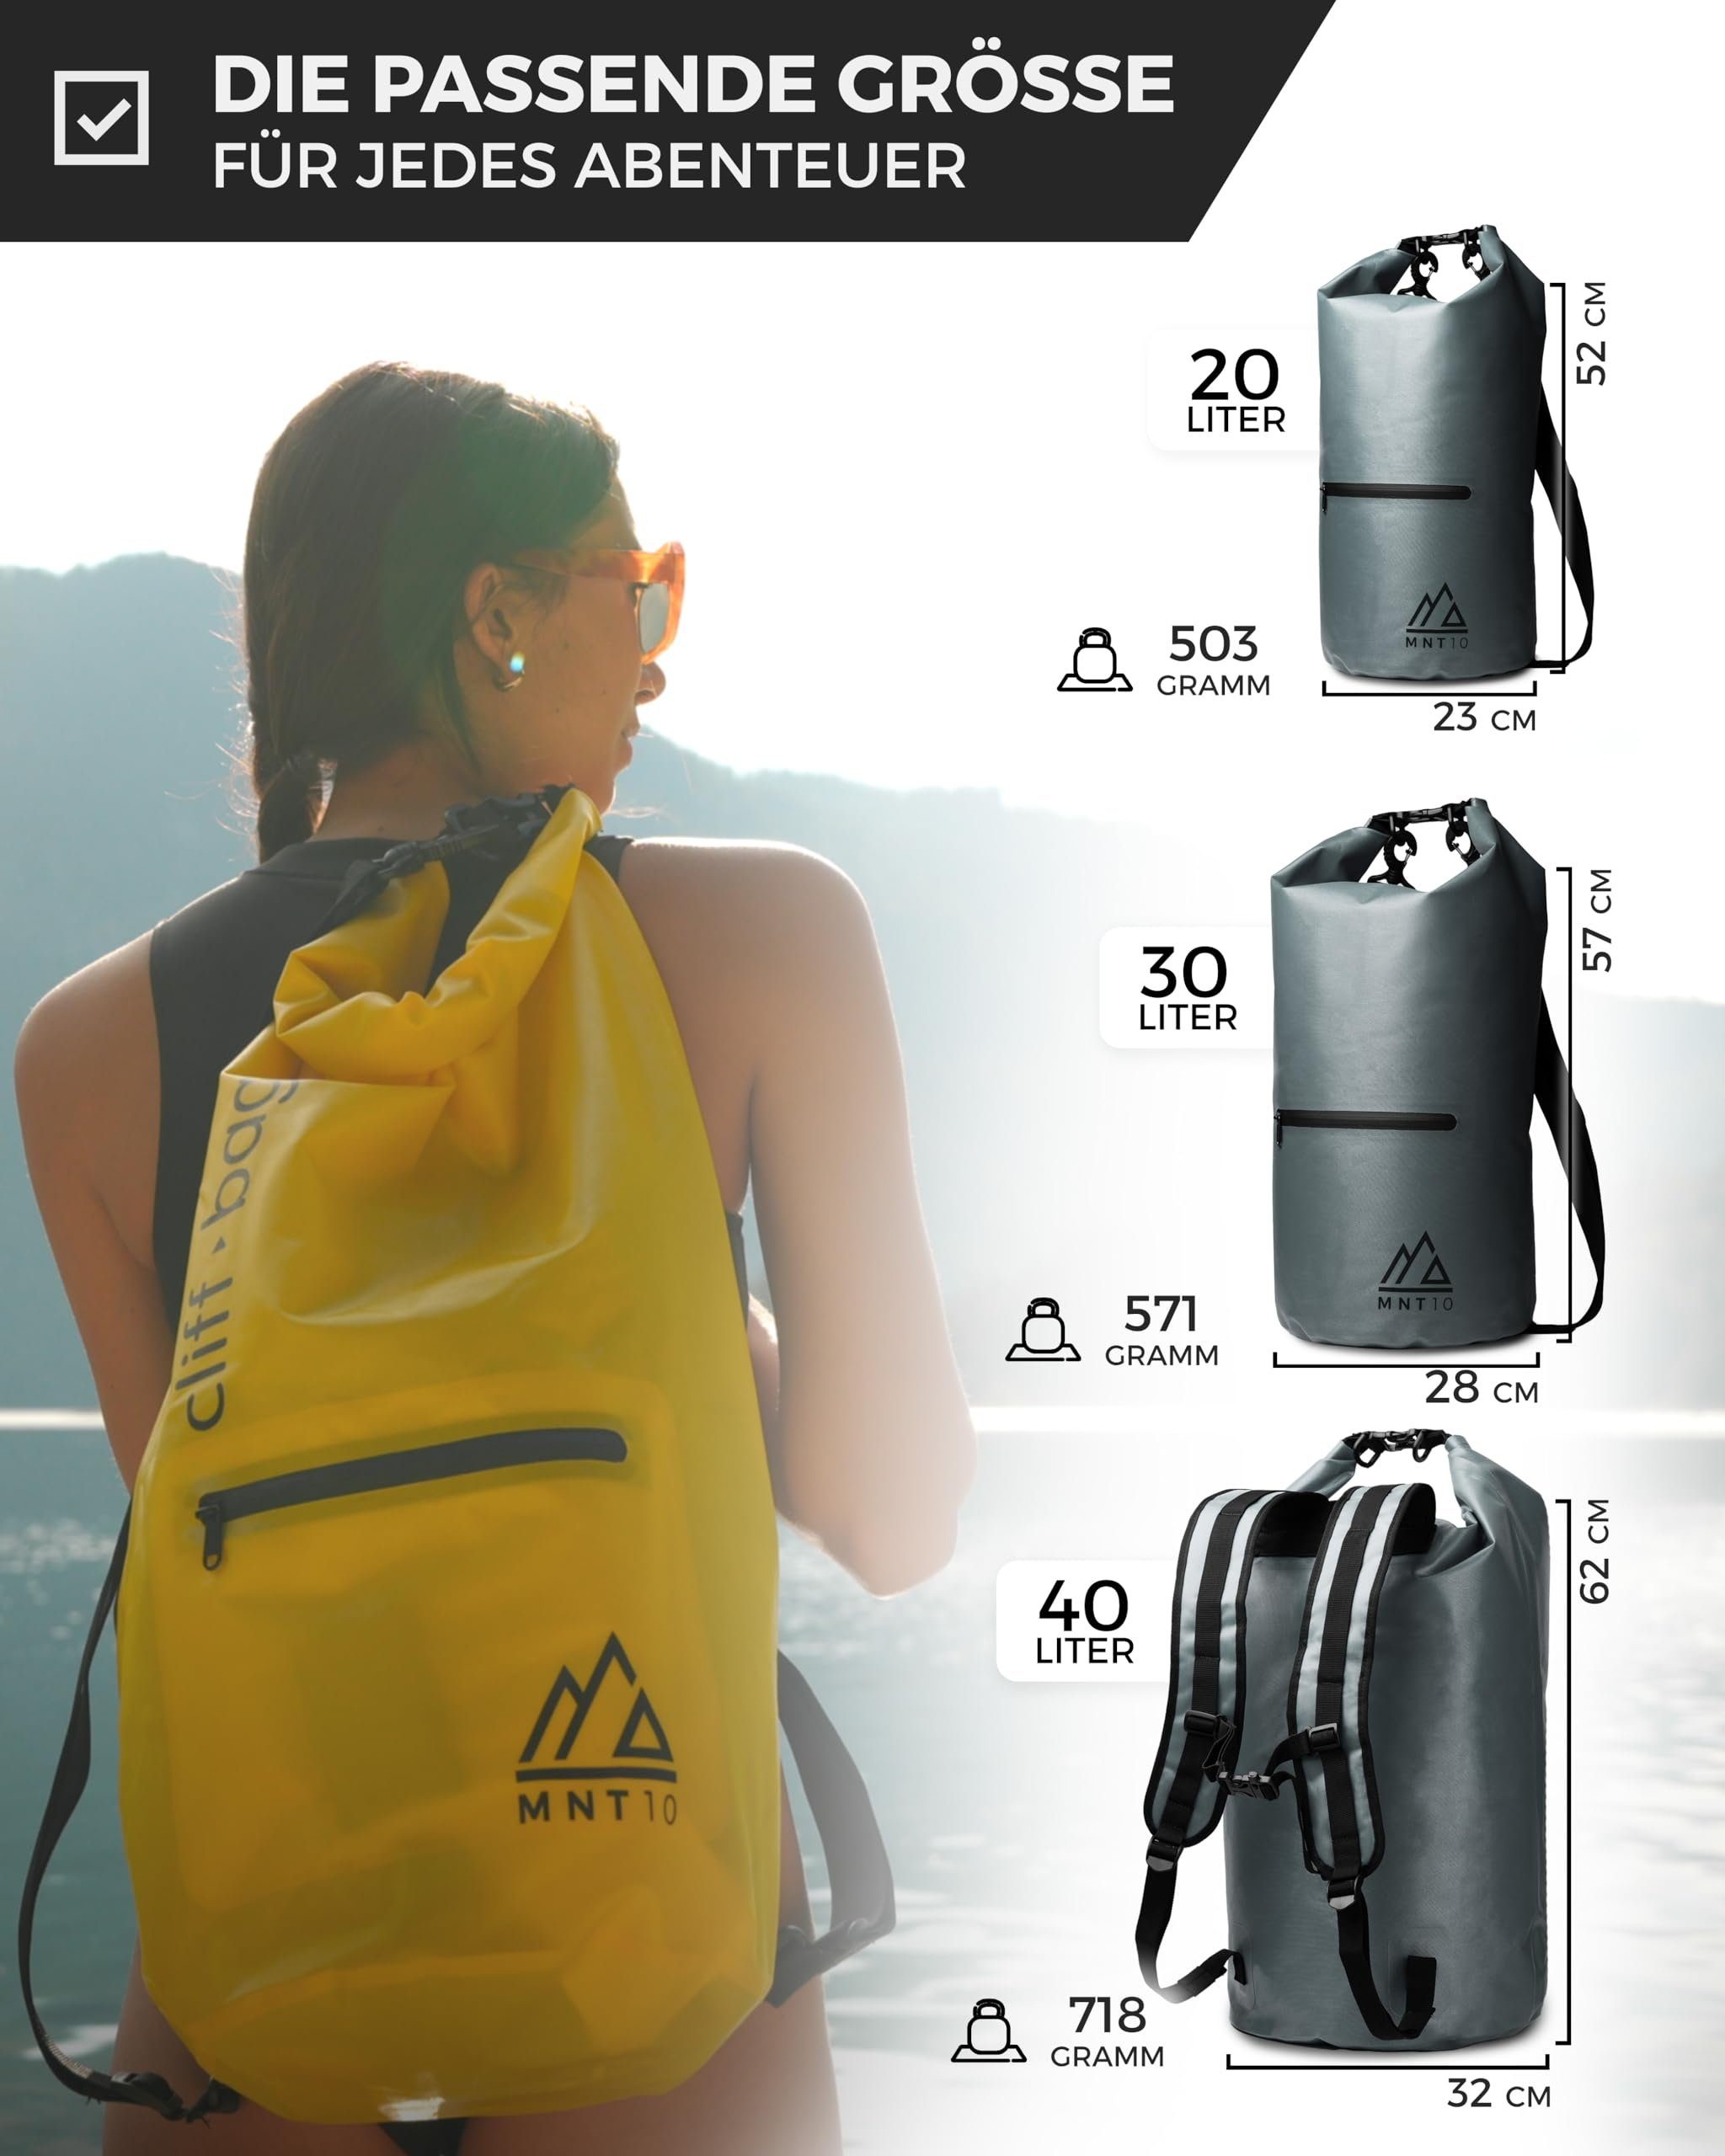 in I Drybag Drybag MNT10 Rucksack Dry 30L, 20L, 40L “Cliff-Bag” Bag Grey MNT10